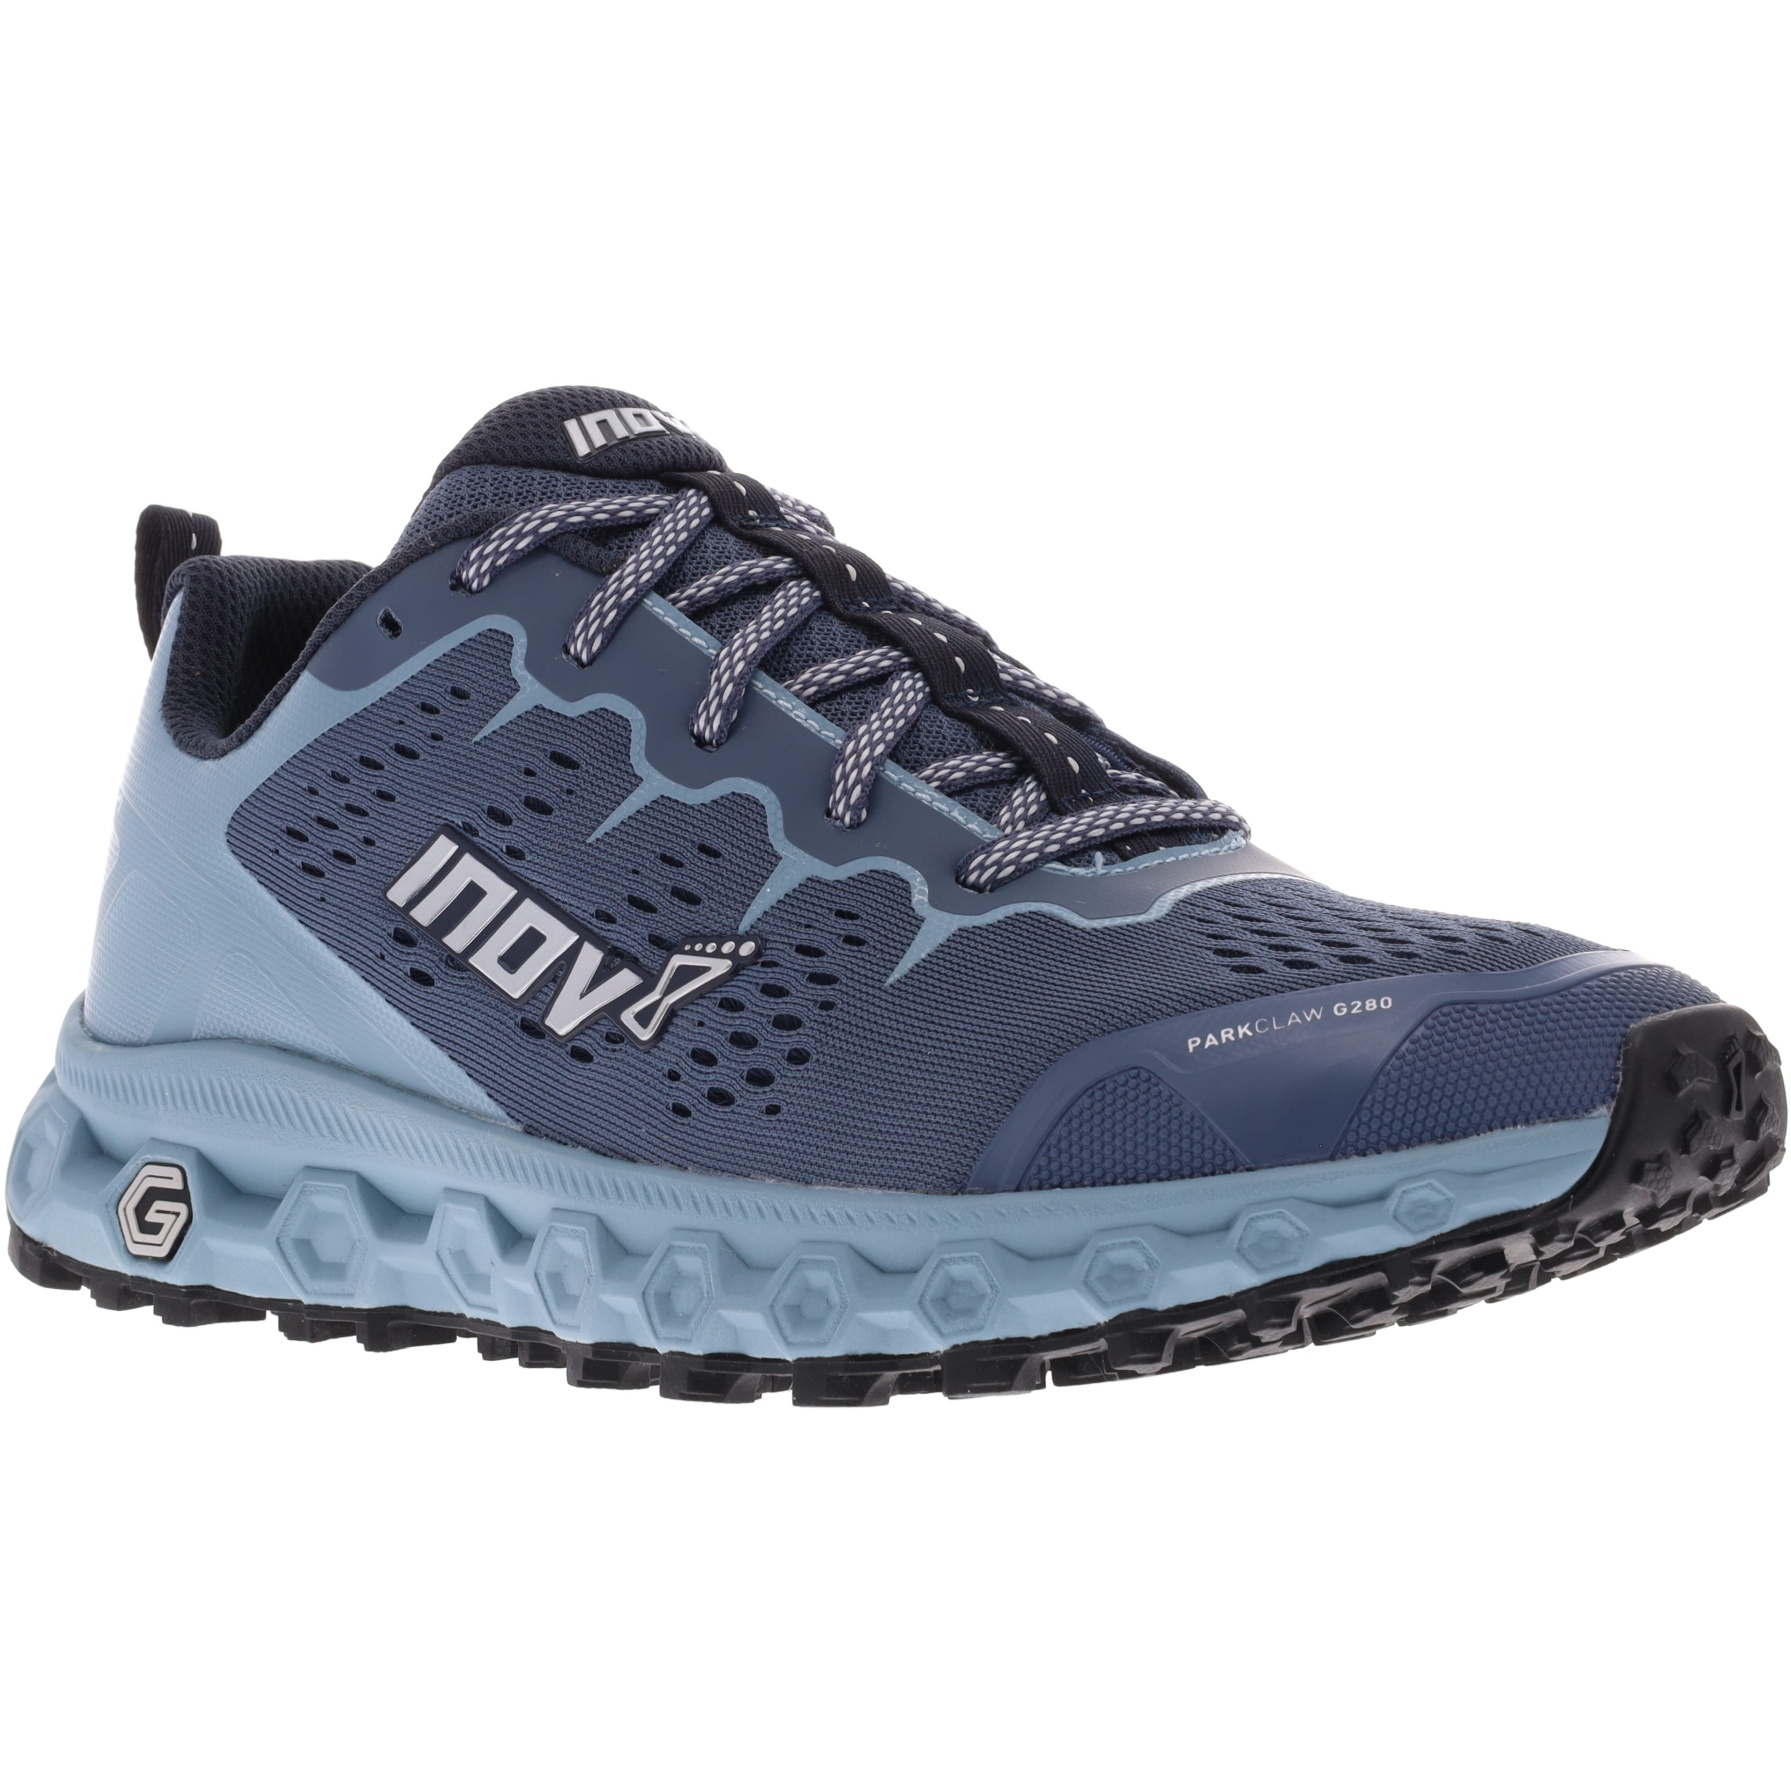 Imagen de Inov-8 Zapatillas Running Mujer - Parkclaw G 280 Wide - azul gris/azul claro